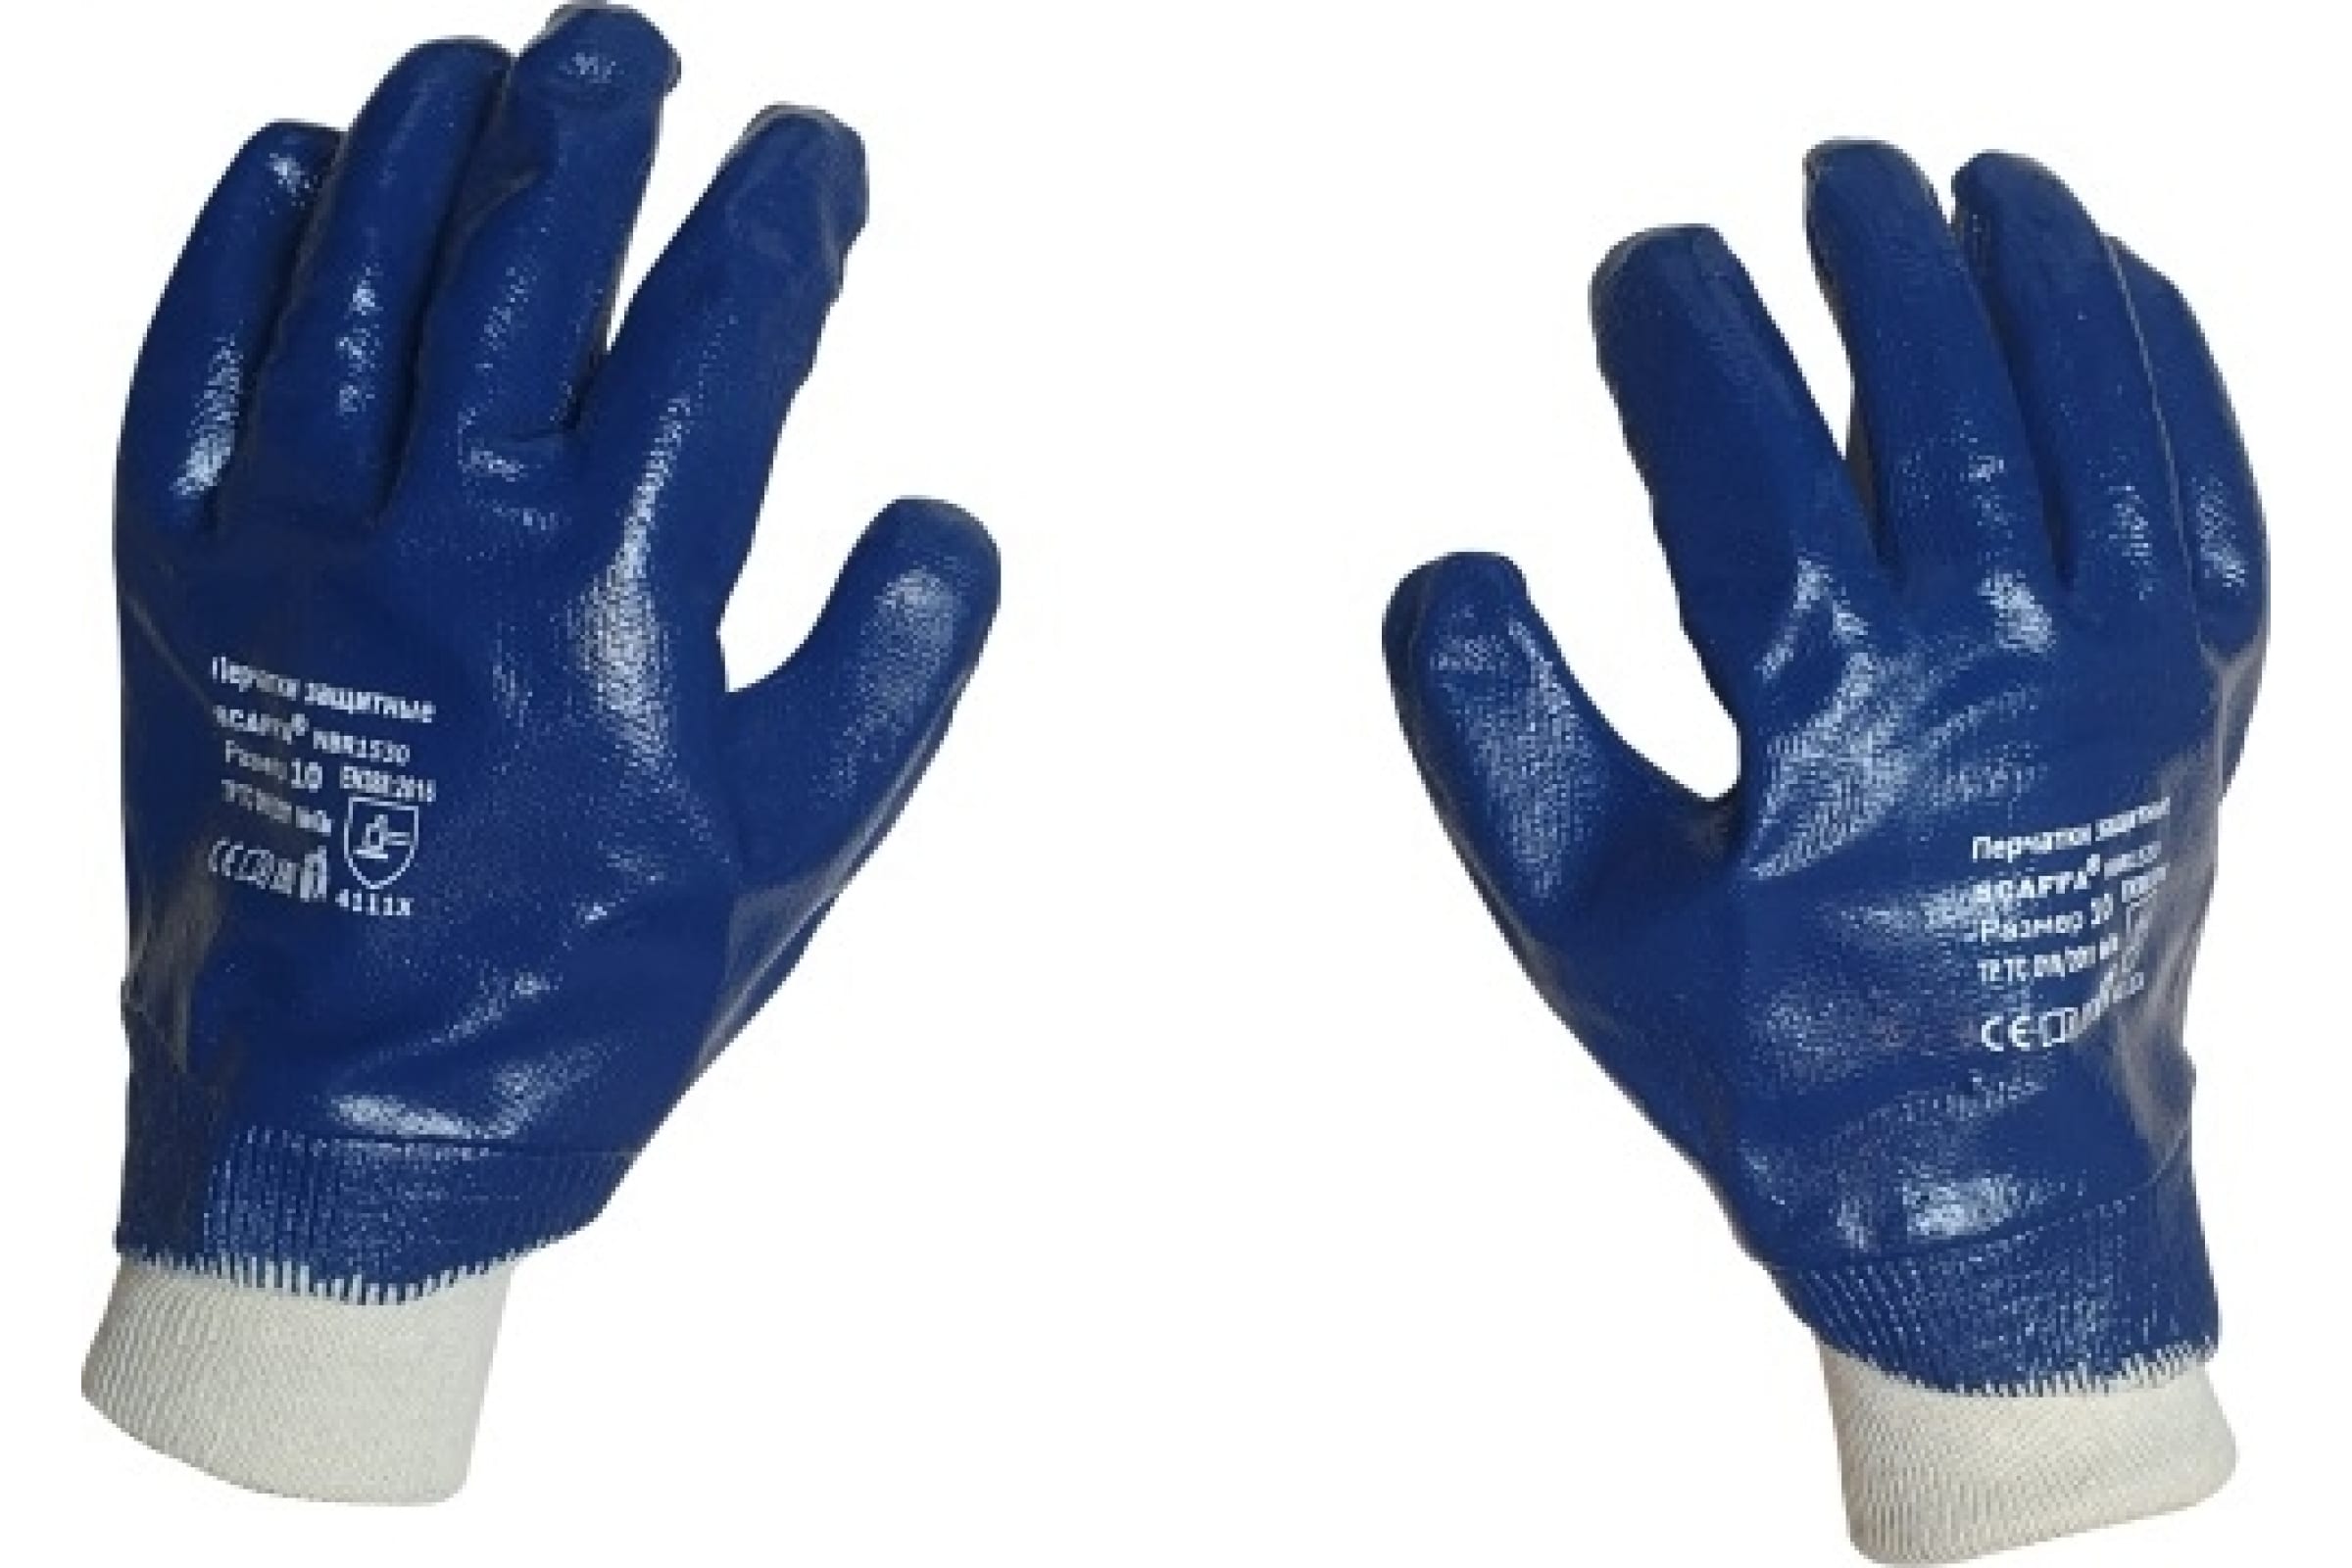 Scaffa перчатки с полным нитриловым обливом NBR1530 размер 10 00-00012457 перчатки с полным нитриловым обливом scaffa nbr1515 8